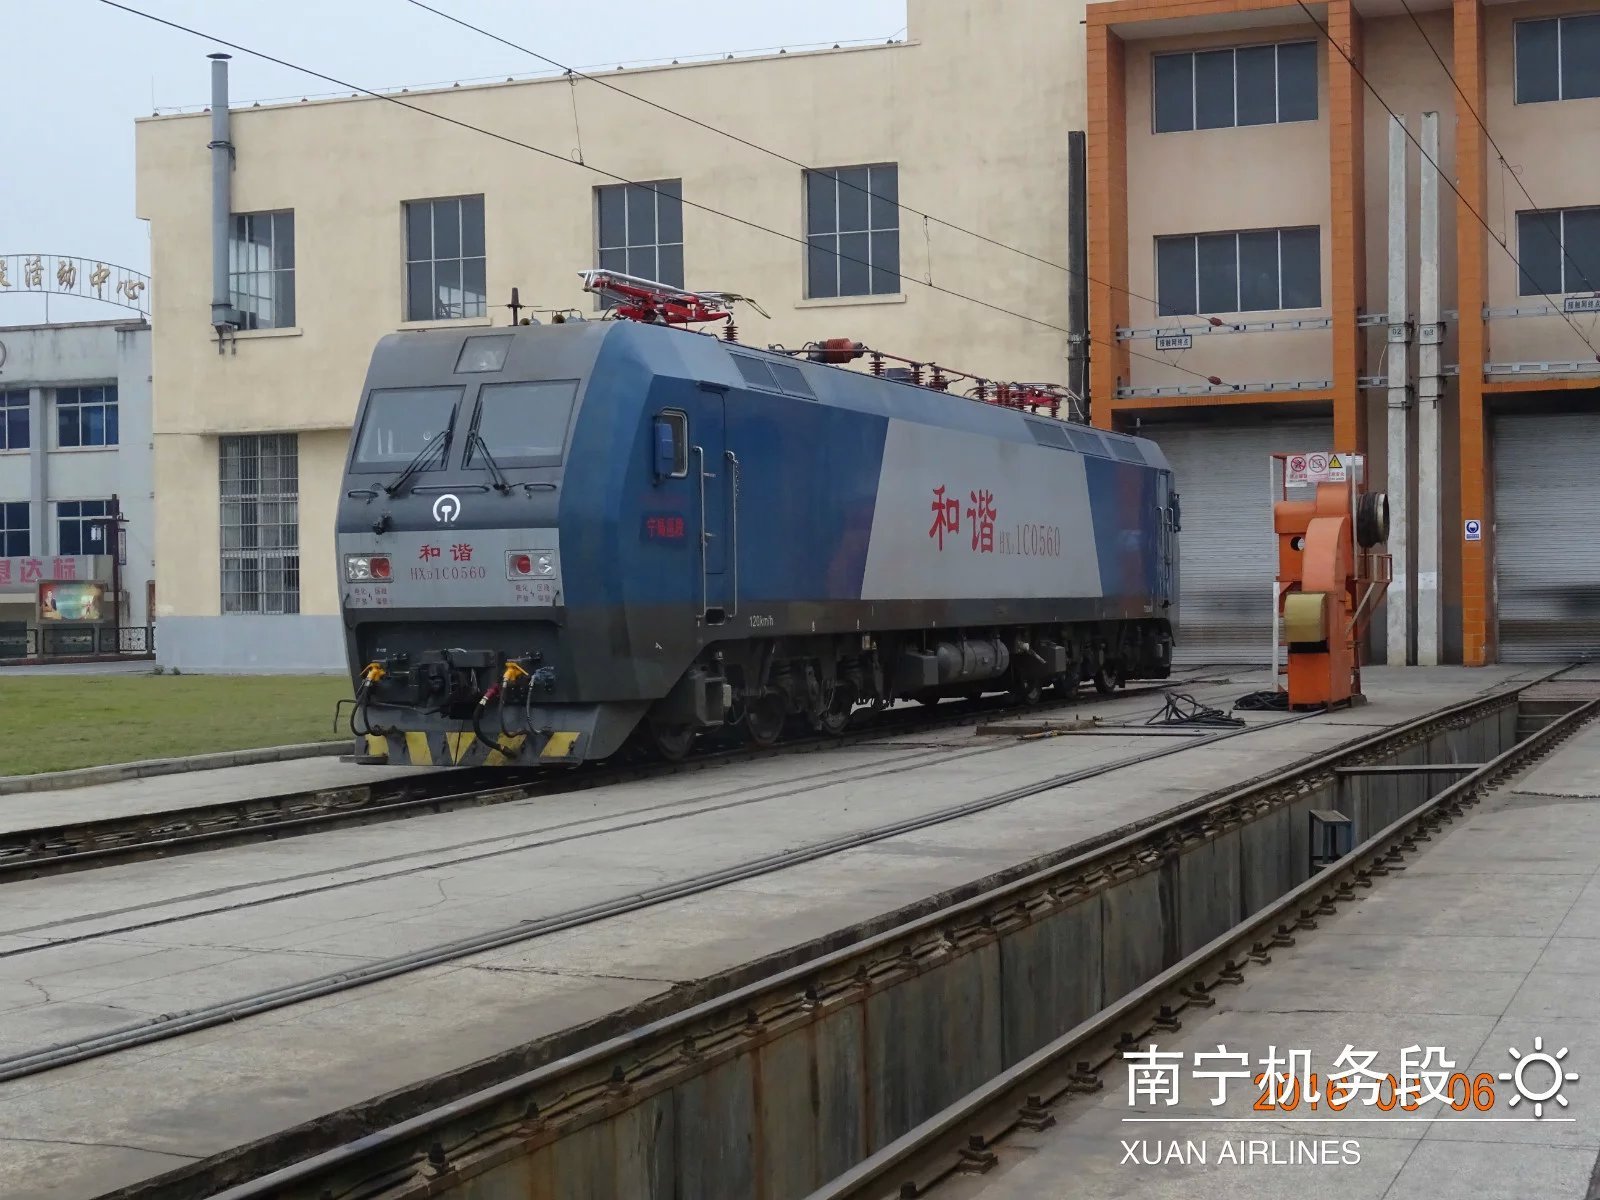 电力火车头出售,电力火车回收产品系列展示__湖北荆楚联铁路机车车辆设备有限公司